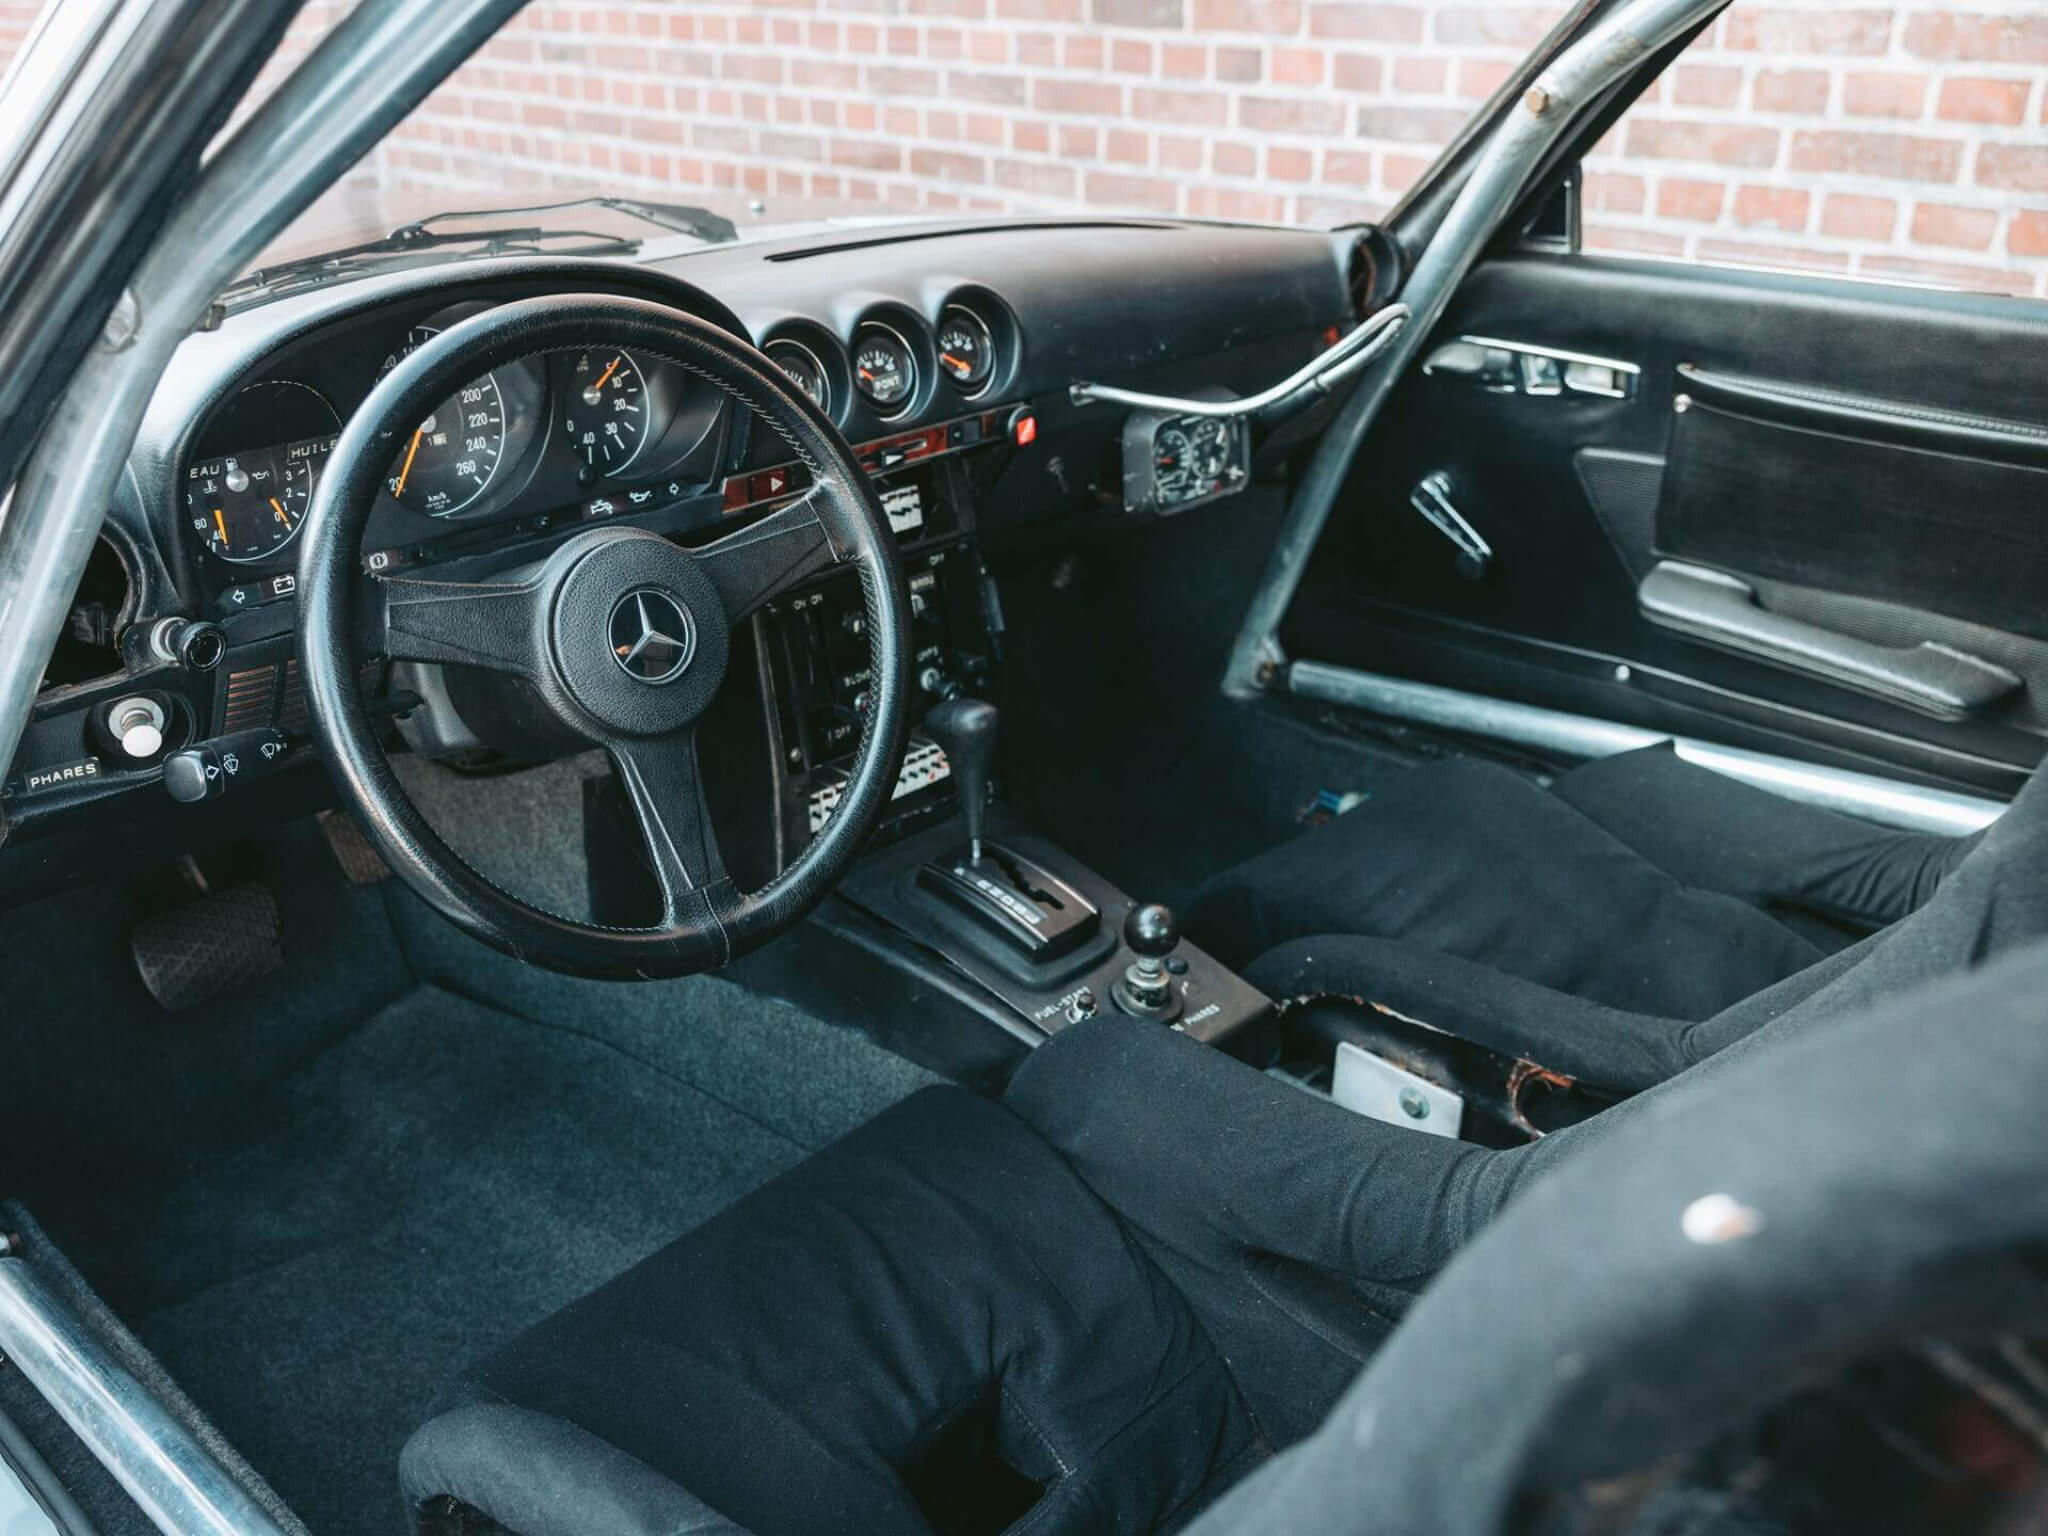 Mercedes-Benz 450 SLC 5.0 interior